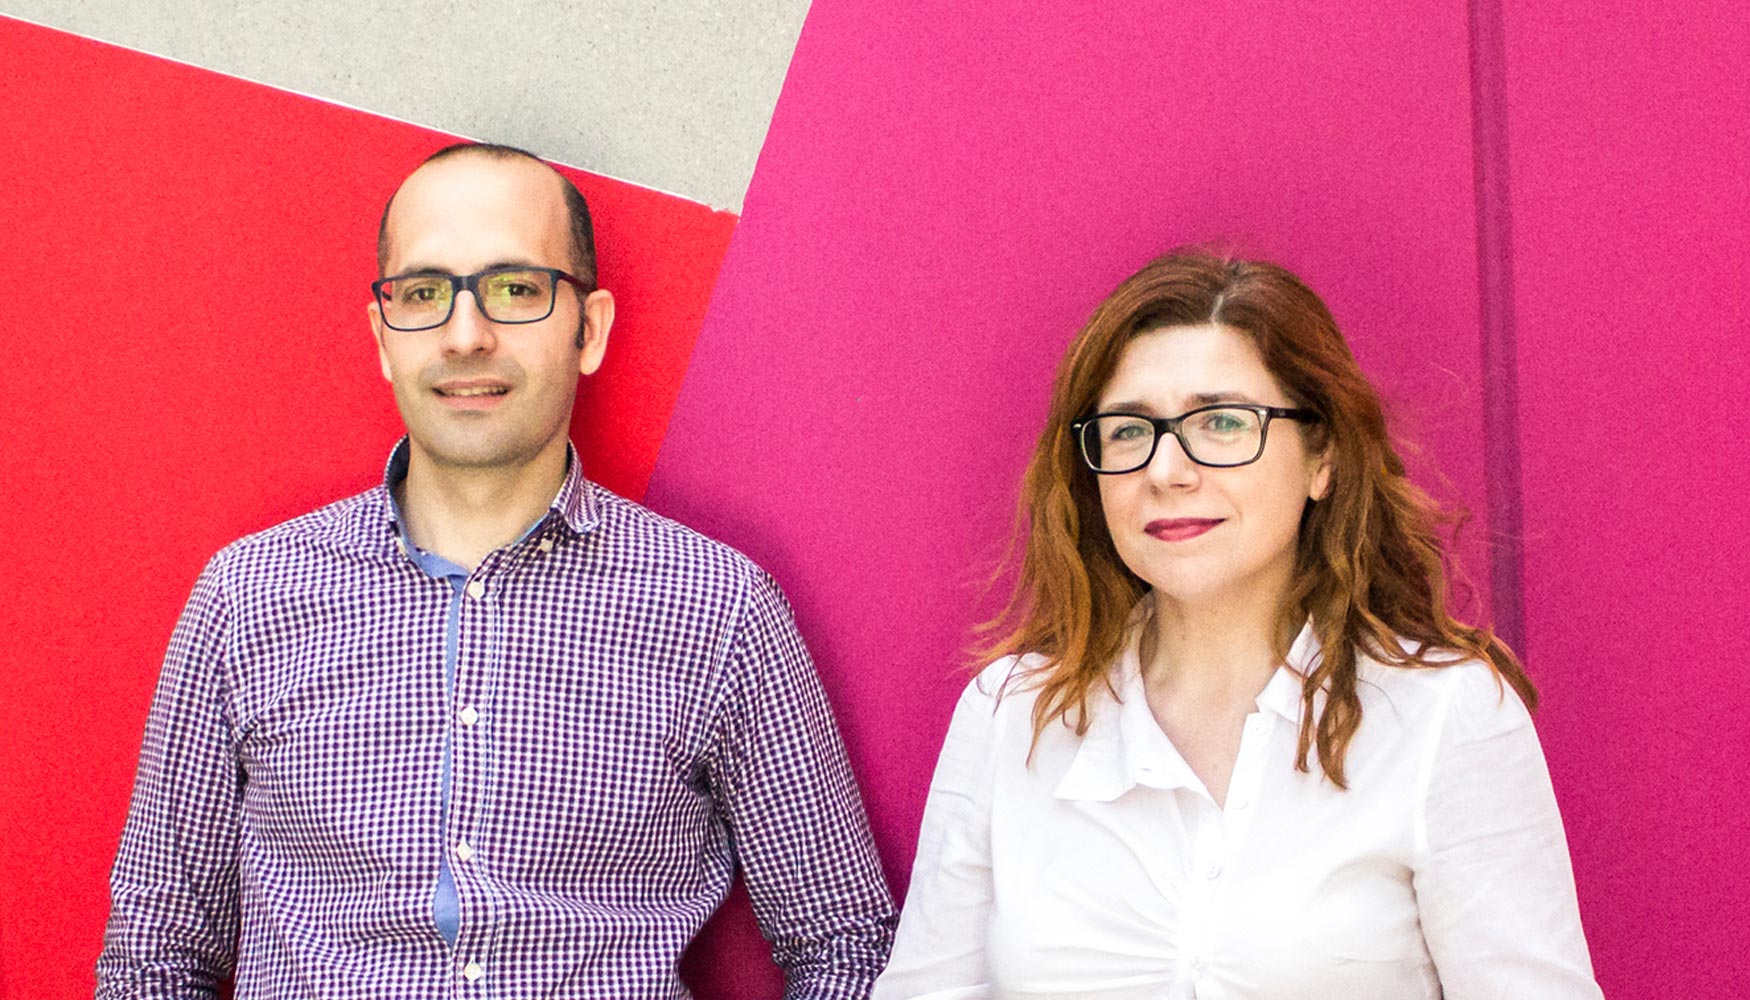 Santiago Esteban y Laura Nevola, miembros fundadores de IDP Pharma, trabajan en unas oficinas situadas al Parc Cientfic de Barcelona...